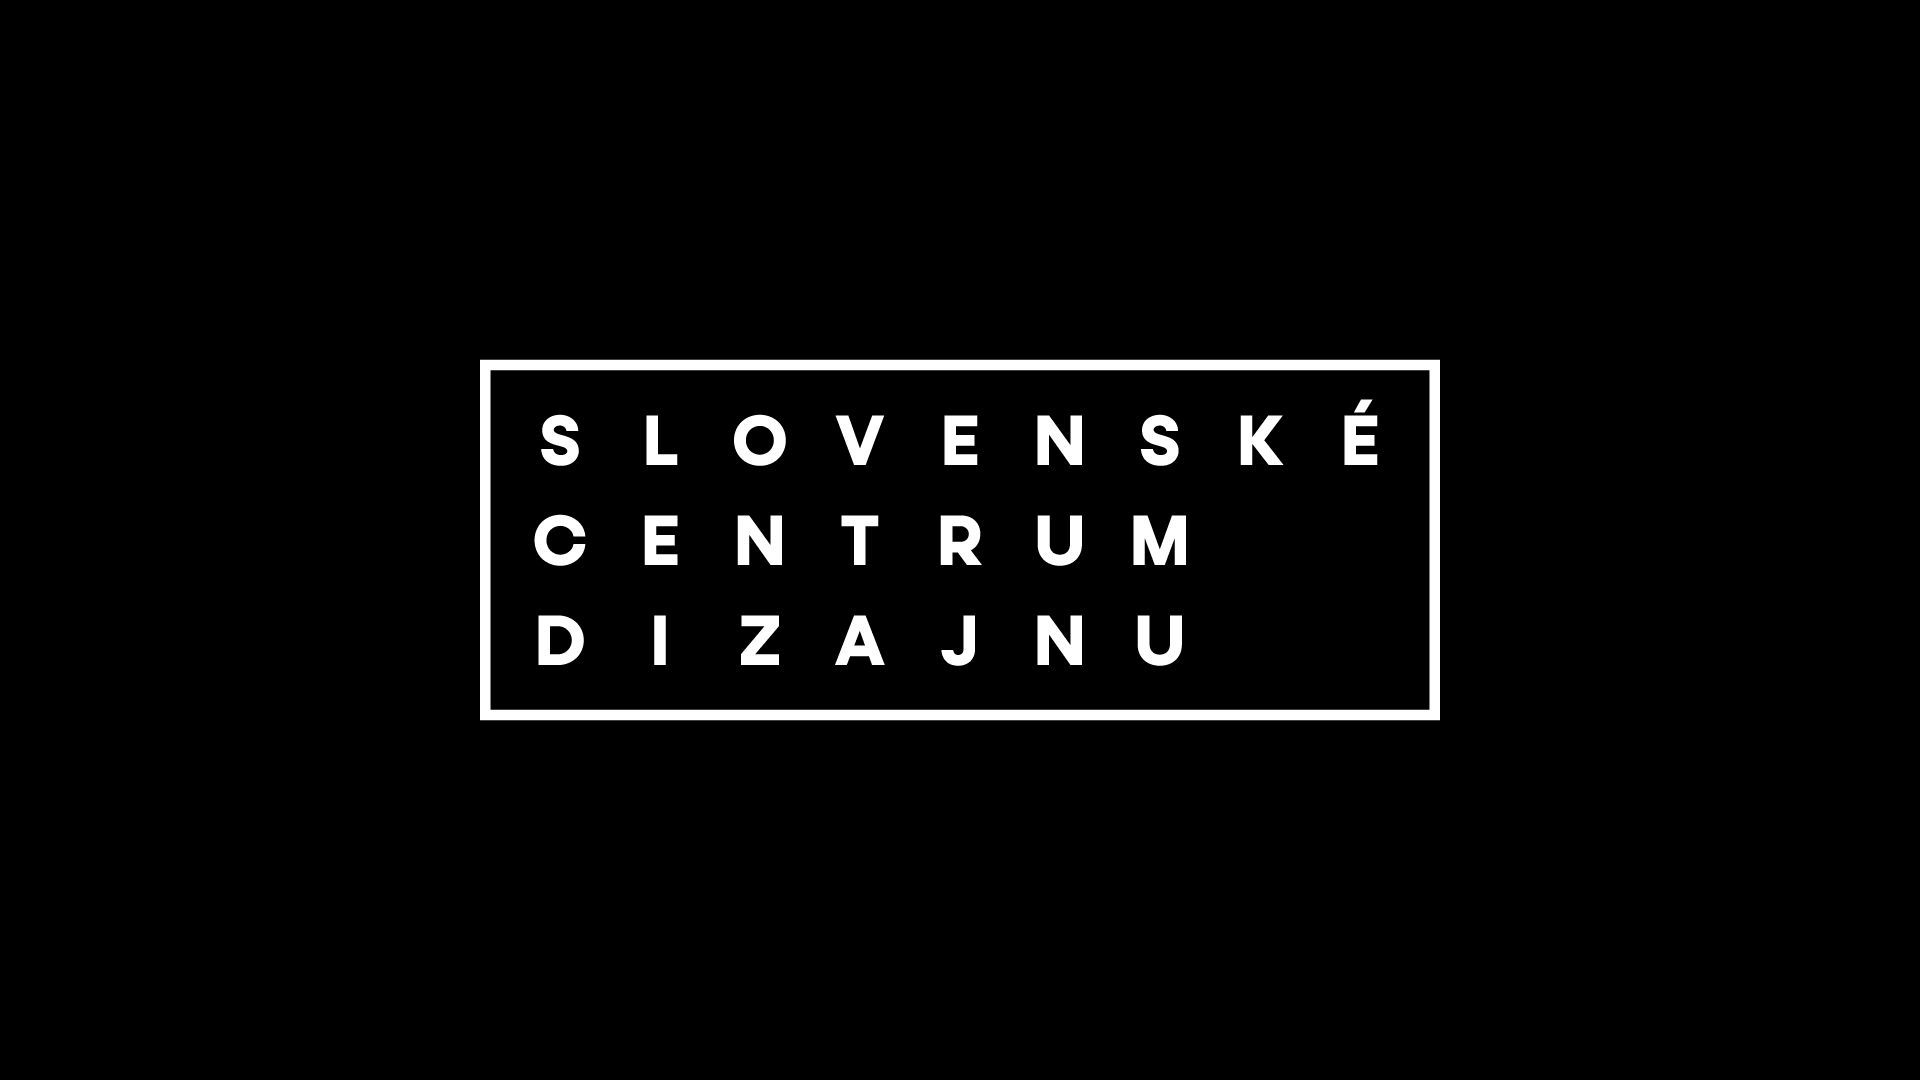 Slovenské centrum dizajnu